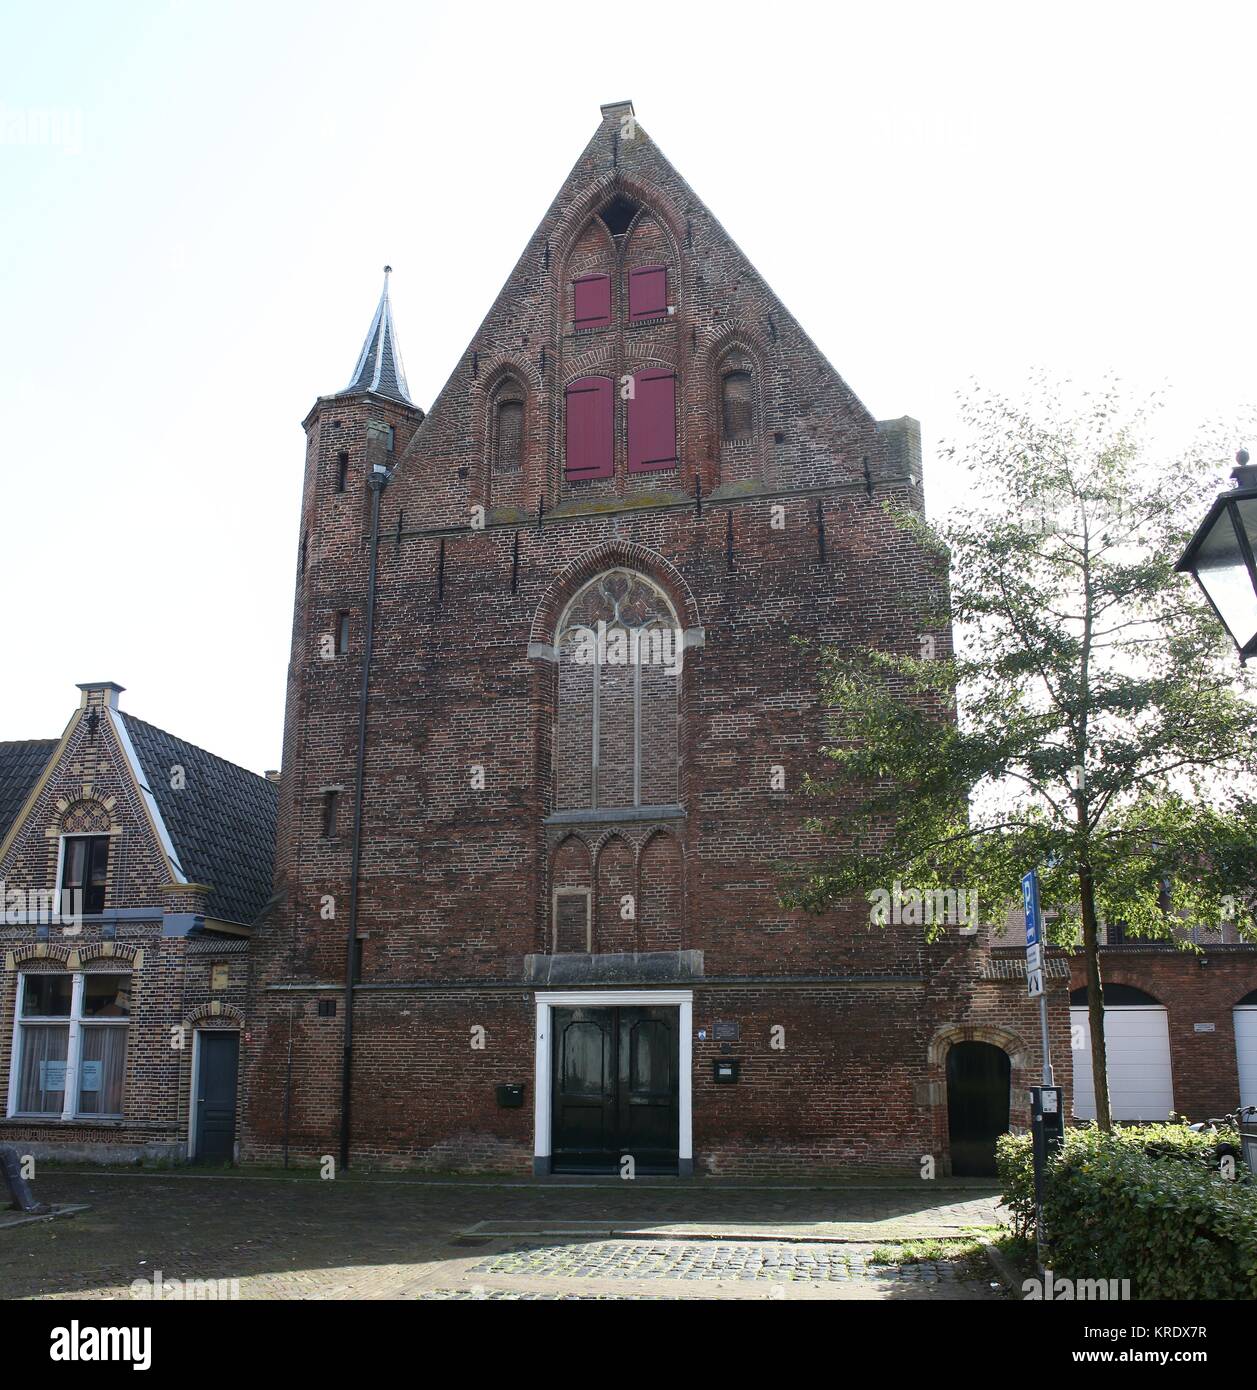 Waalse kerk (iglesia valona, Eglise Wallonne), iglesia calvinista en Zwolle, Holanda en Schoutenstraat. Edificio de la iglesia data de 1500. Foto de stock